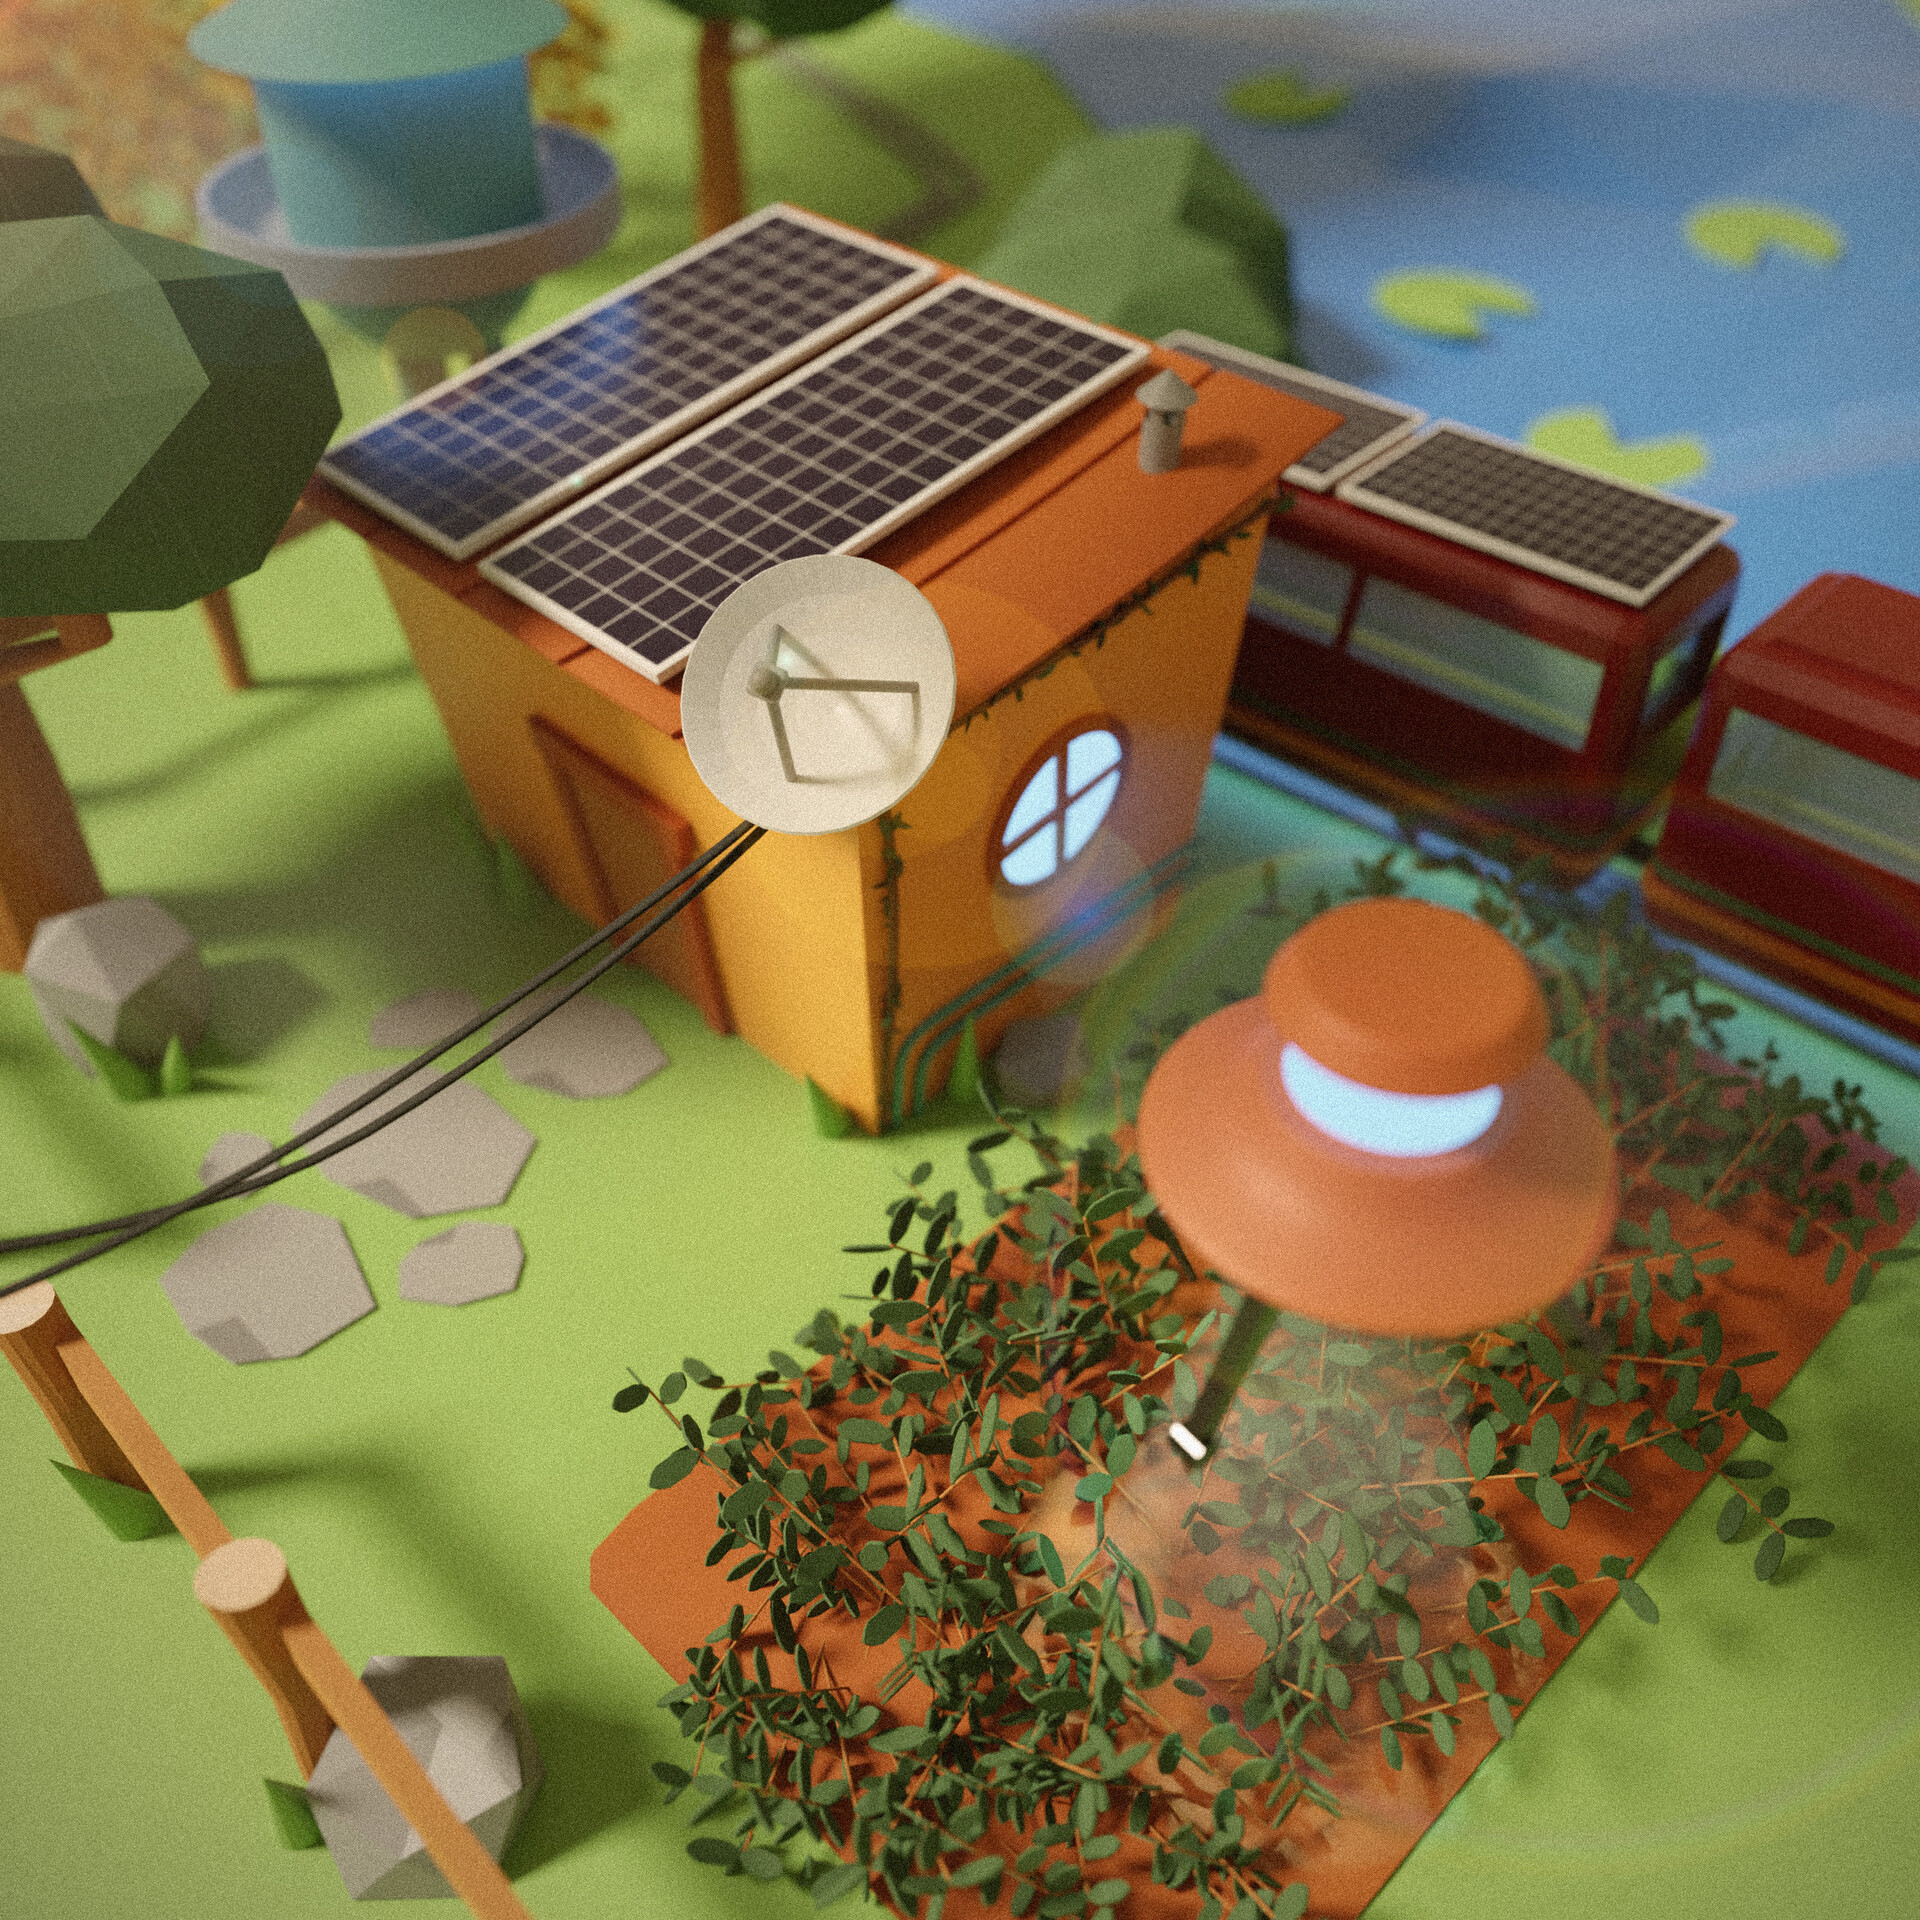 ArtStation - Solarpunk Inspired off-grid homestead